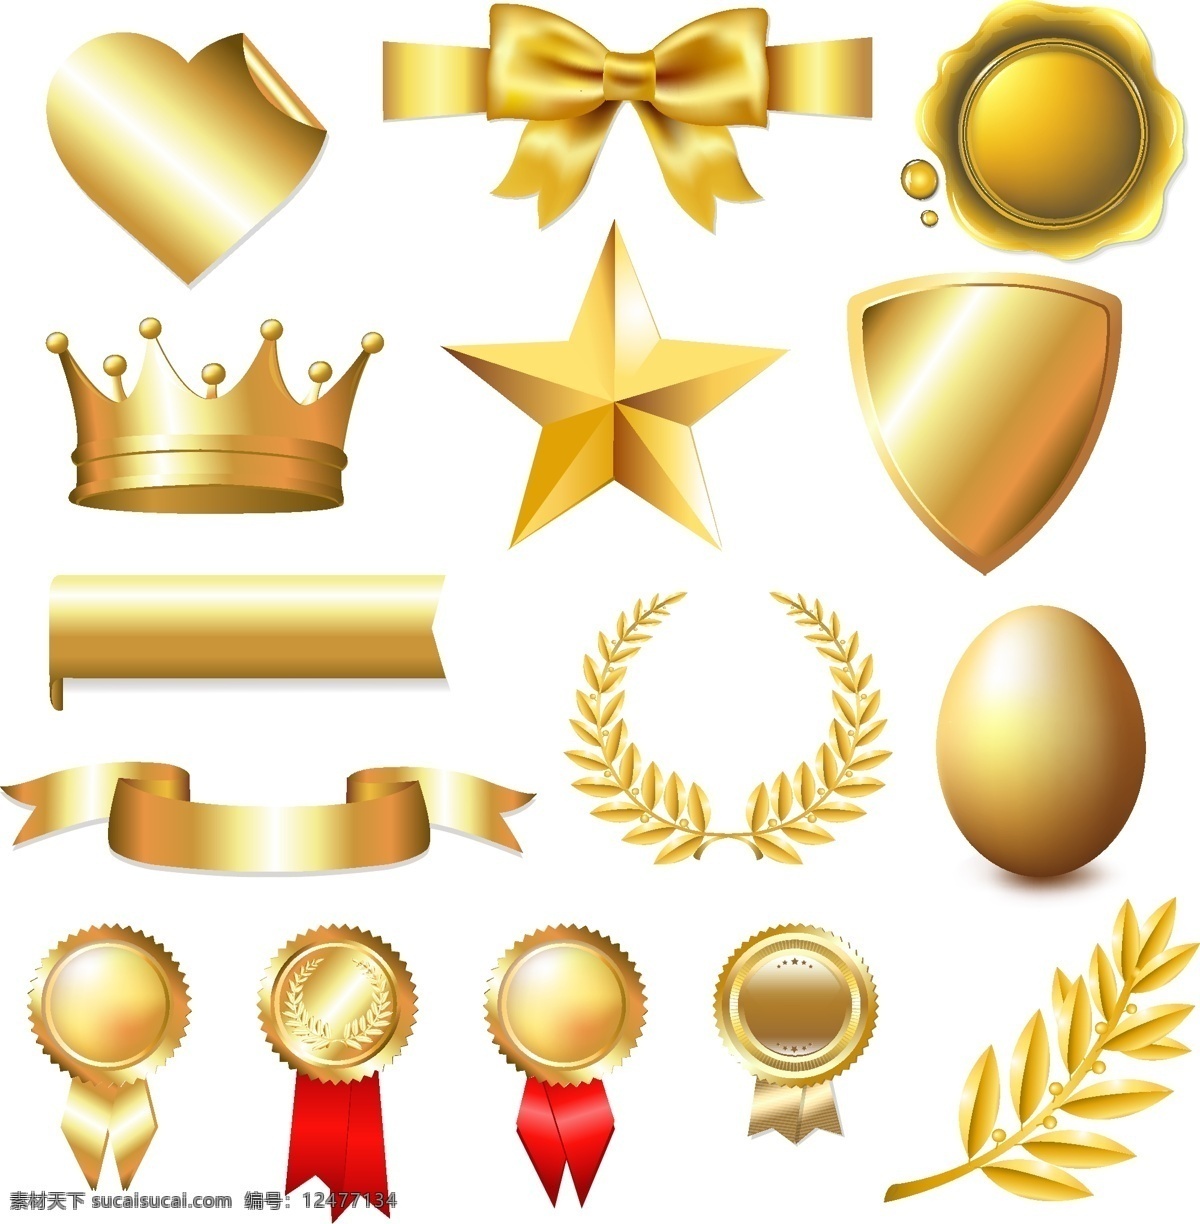 金色标志图标 金色图标 金色标志 黄金标志 土豪金 金色标签 金色logo 其他图标 标志图标